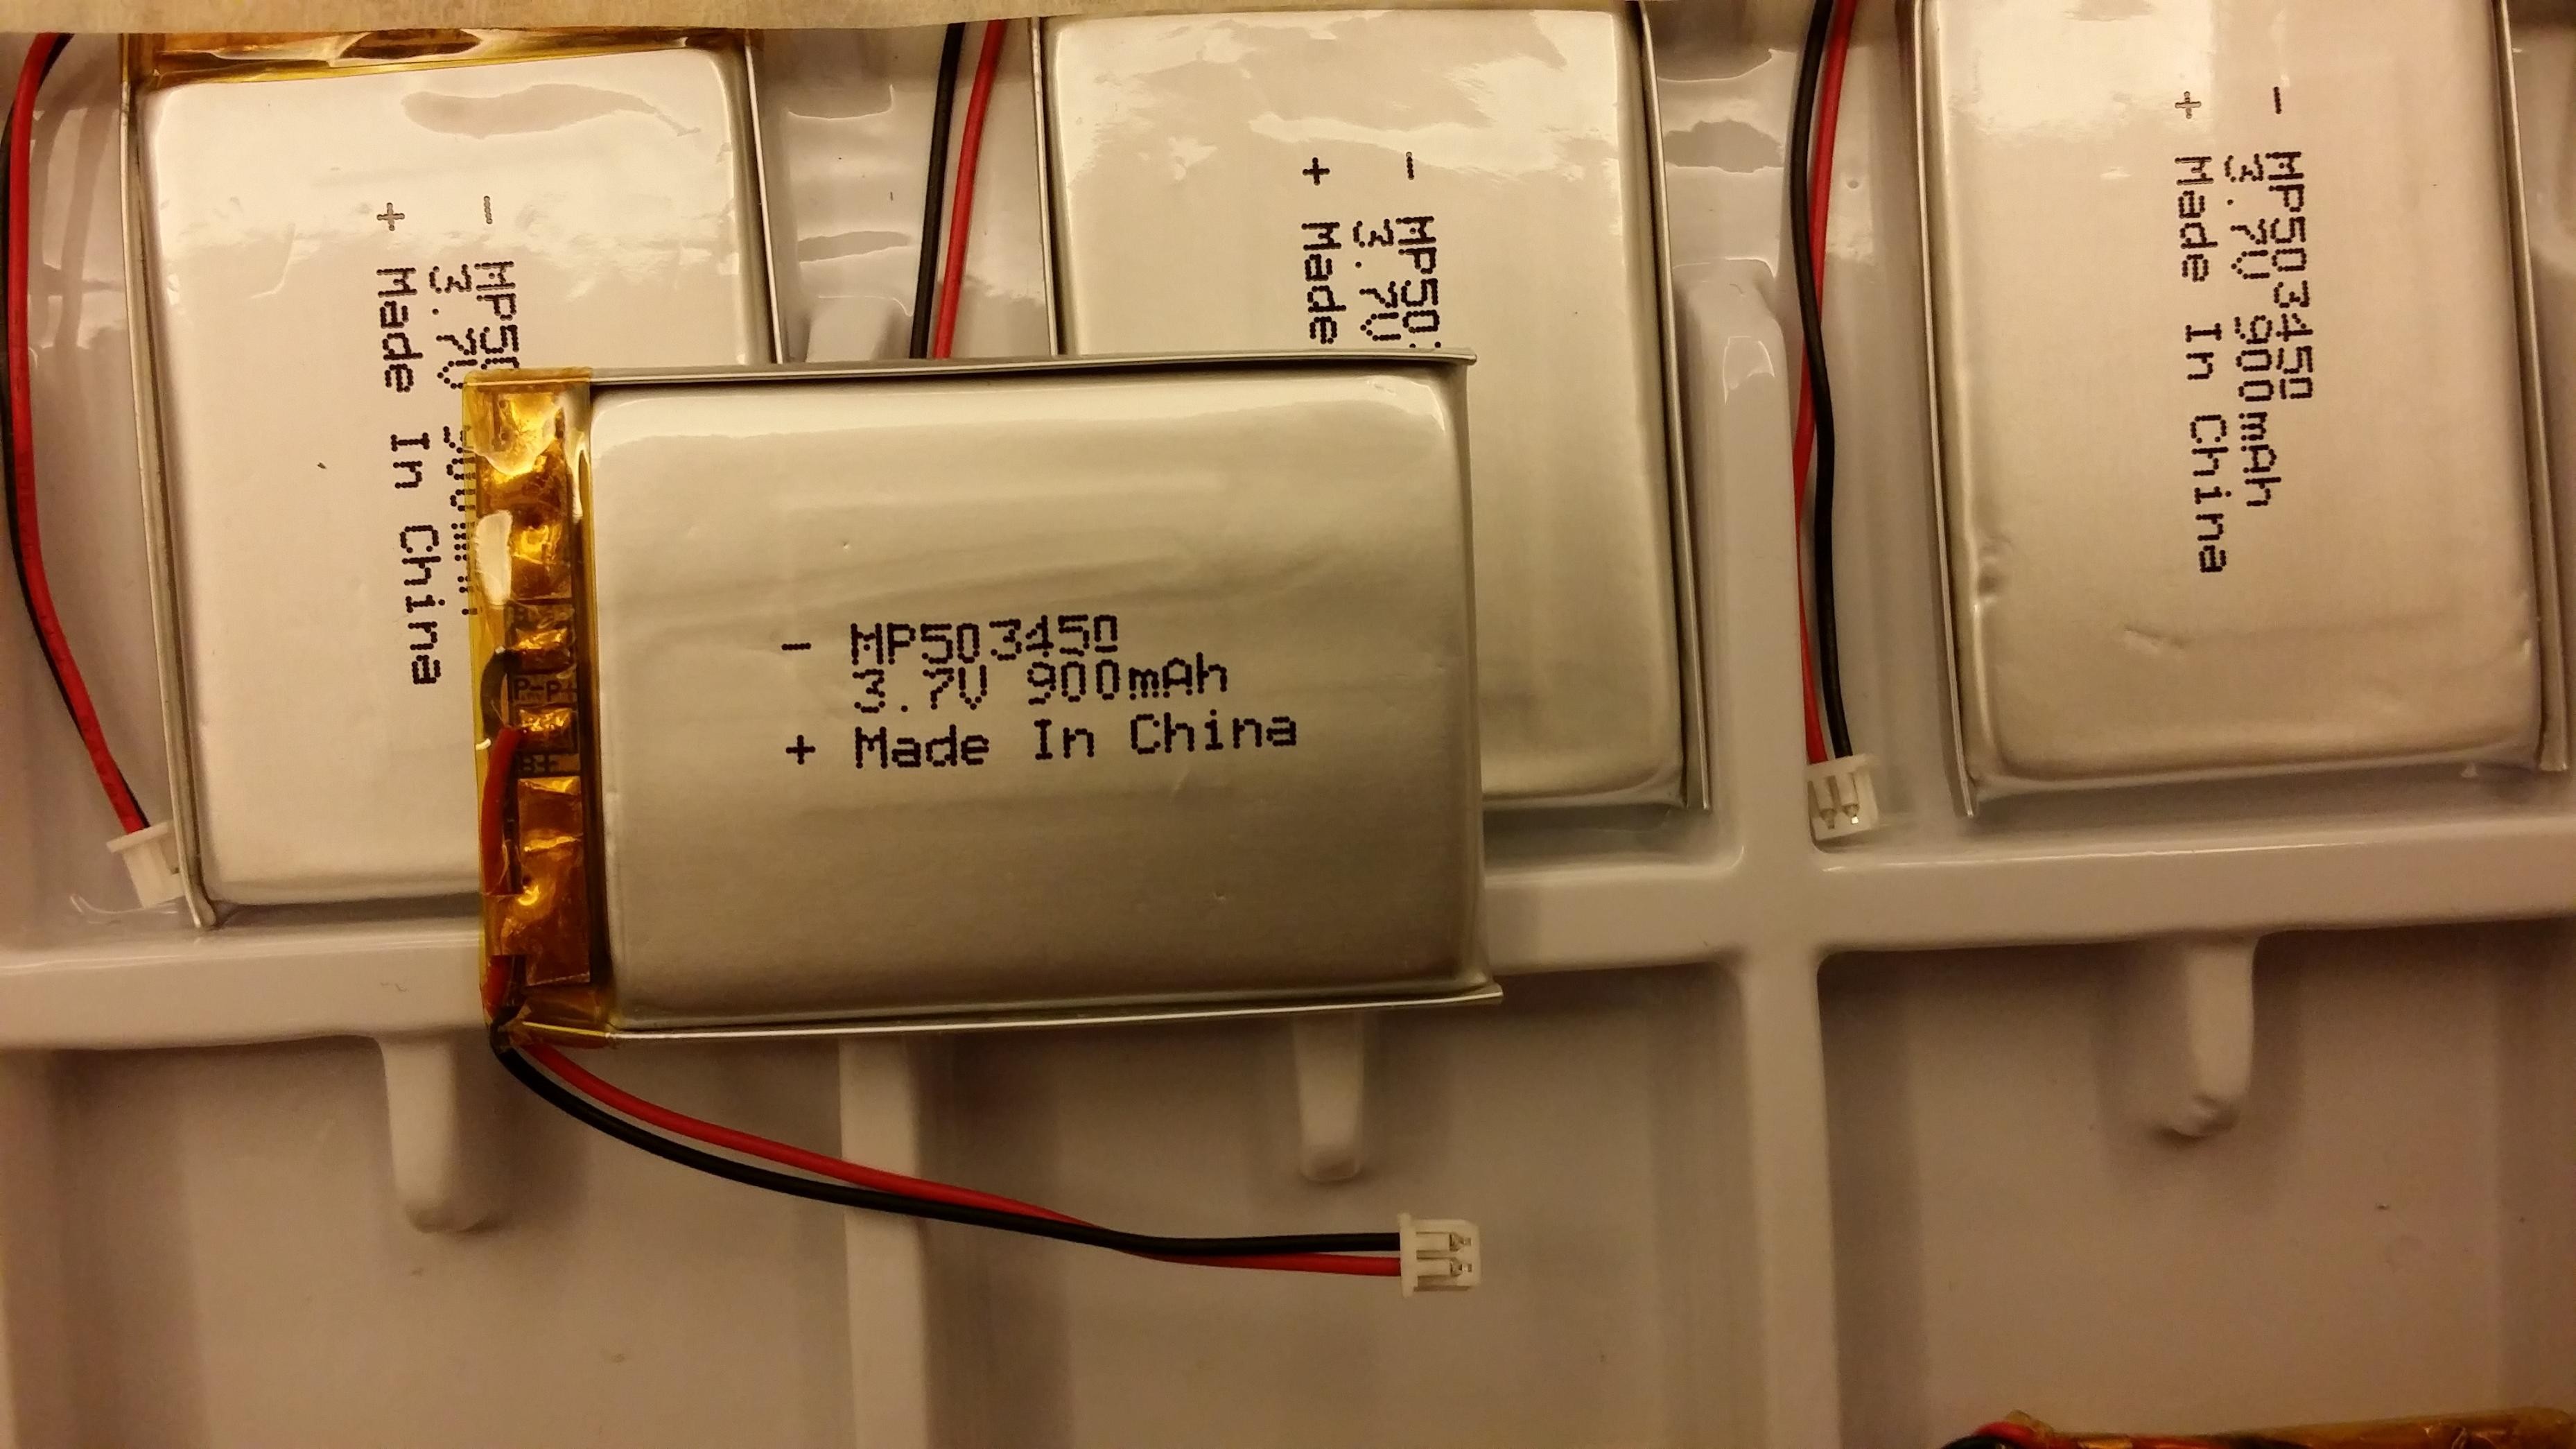 Batterie IEC62133 de polymère de lithium de Li PO 503450 900mAh 3.7V pour le contrôleur à distance